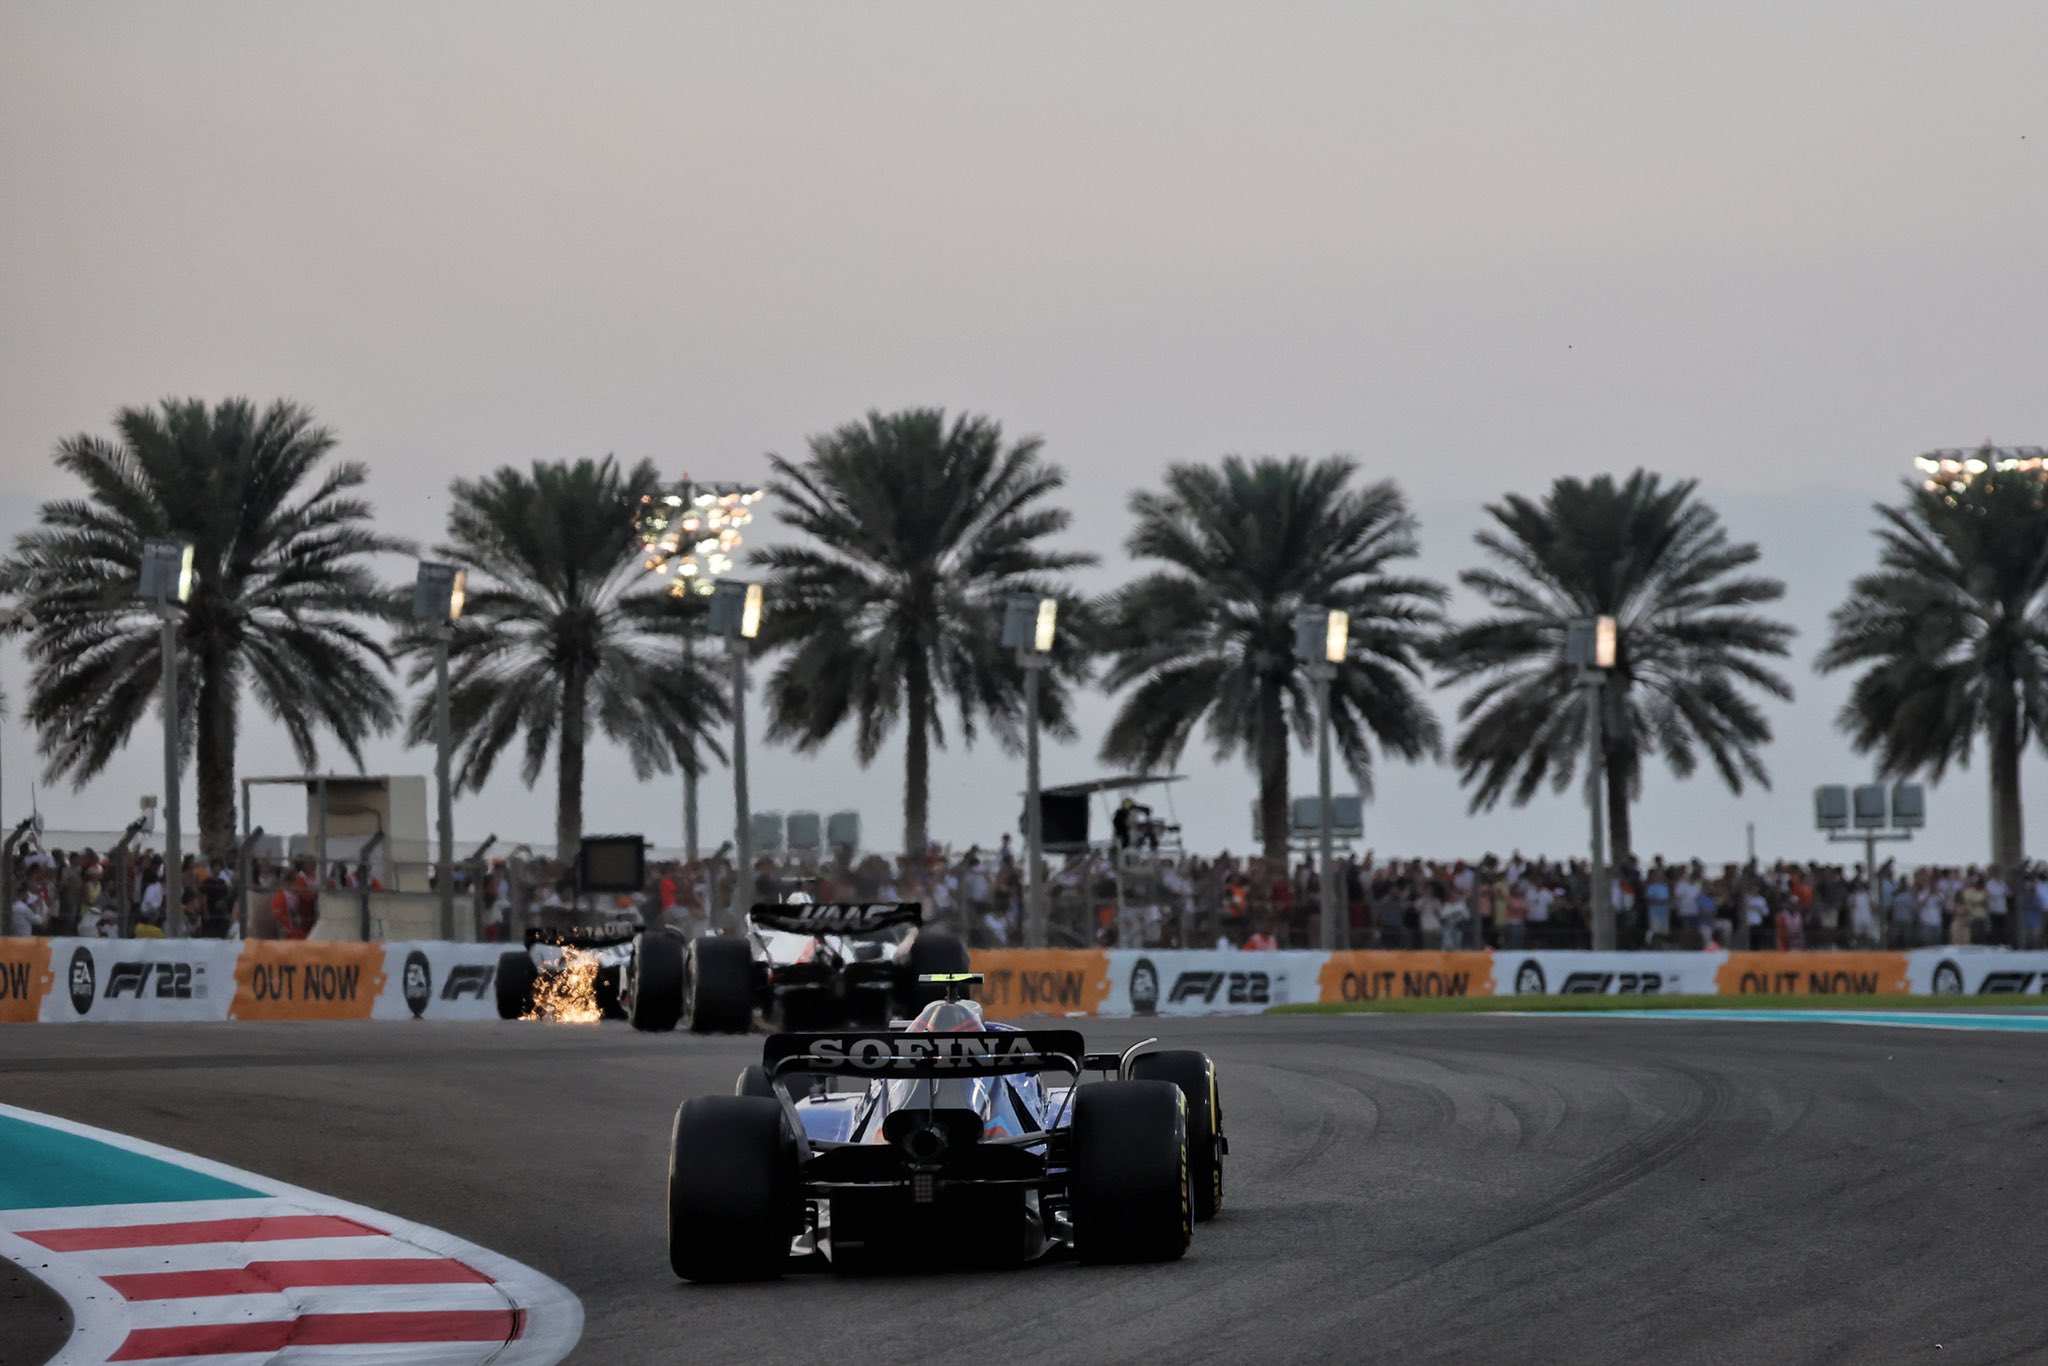 La Williams dans le peloton au GP d'Abu Dhabi 2022